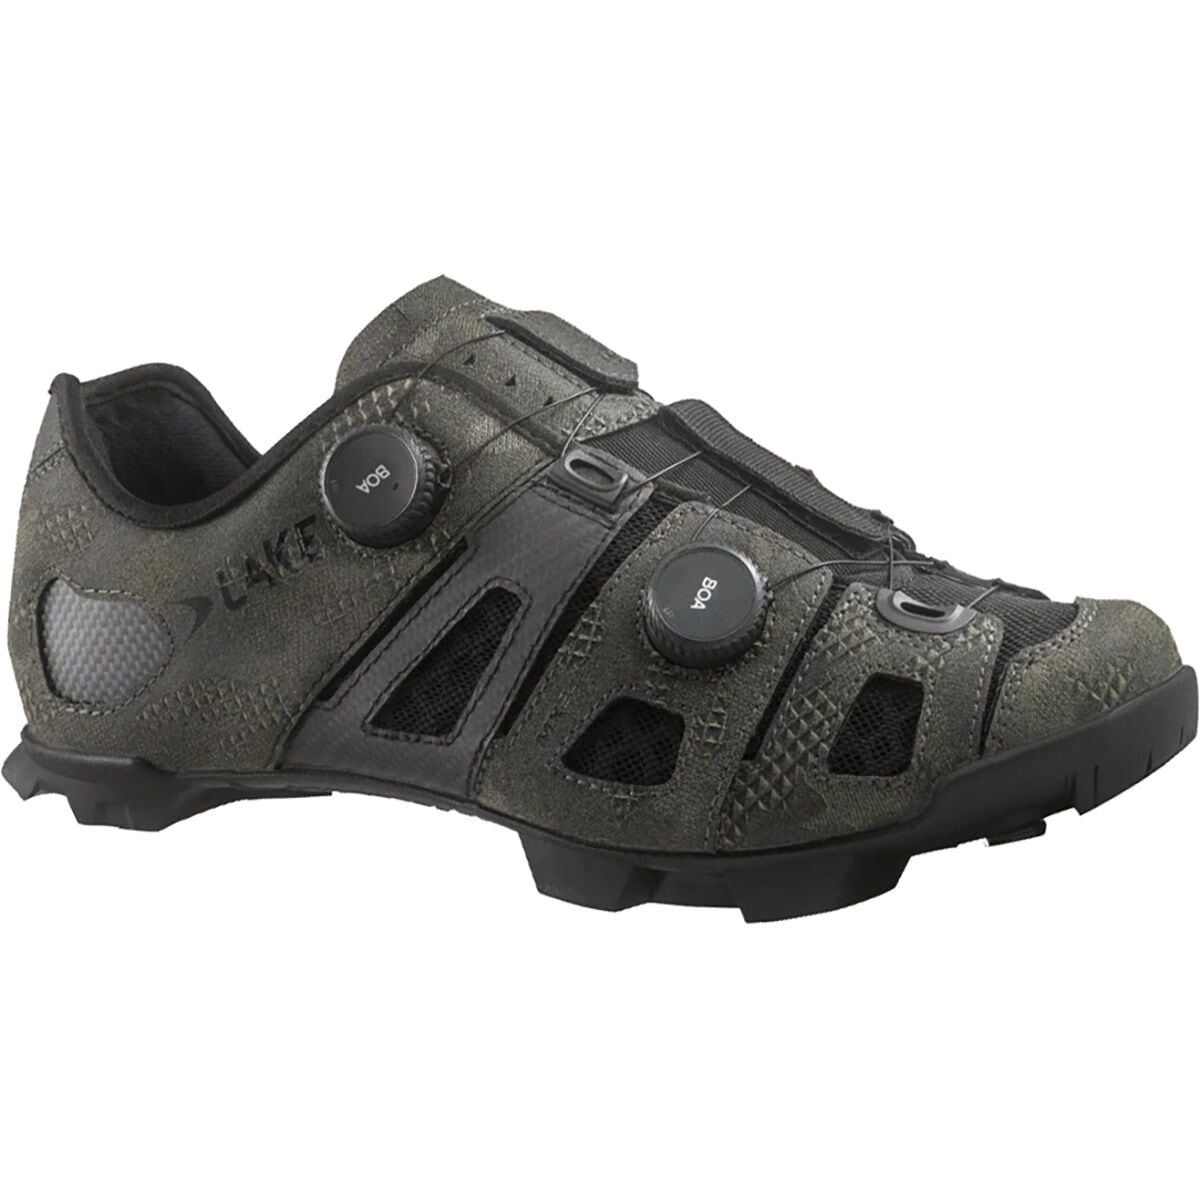 Lake MX242 Endurance Wide Cycling Shoe - Men's